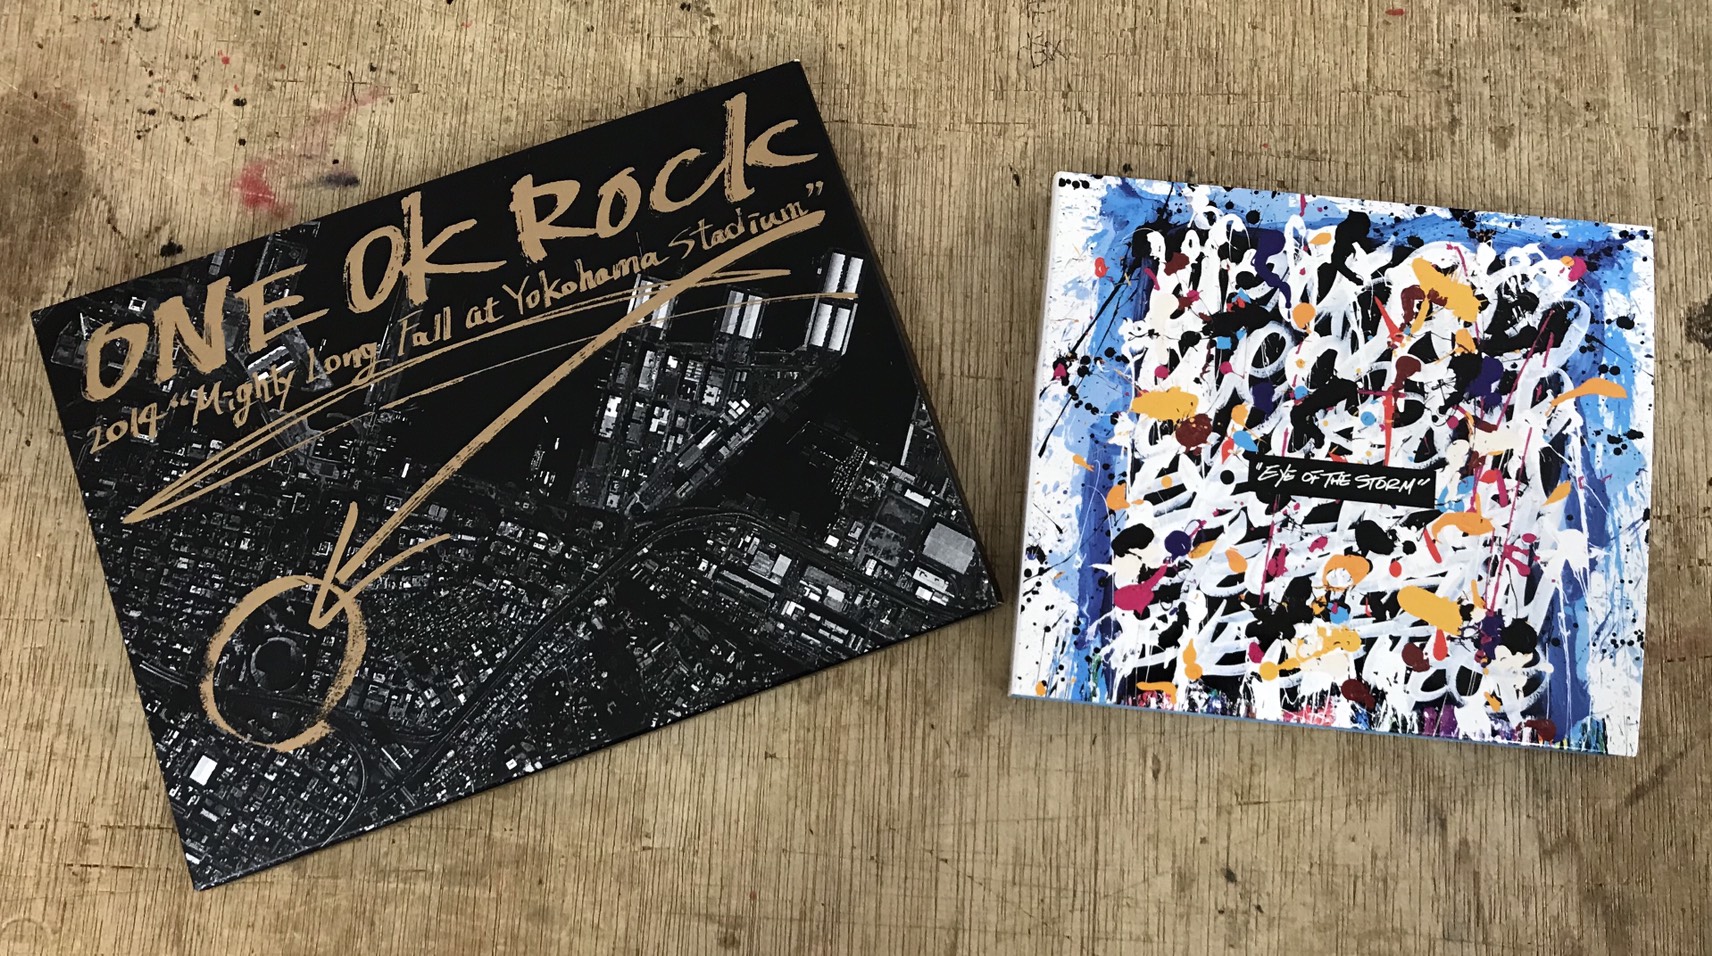 買い取りました One Ok Rock 2014 Mighty Long Fall At Yokohama Stadium 通常仕様 Dvd One Ok Rock Eye Of The Storm 初回限定盤 Cd Dvd 邦楽cd 音楽dvd ロック バンド マンガ倉庫 武雄店ホームページ